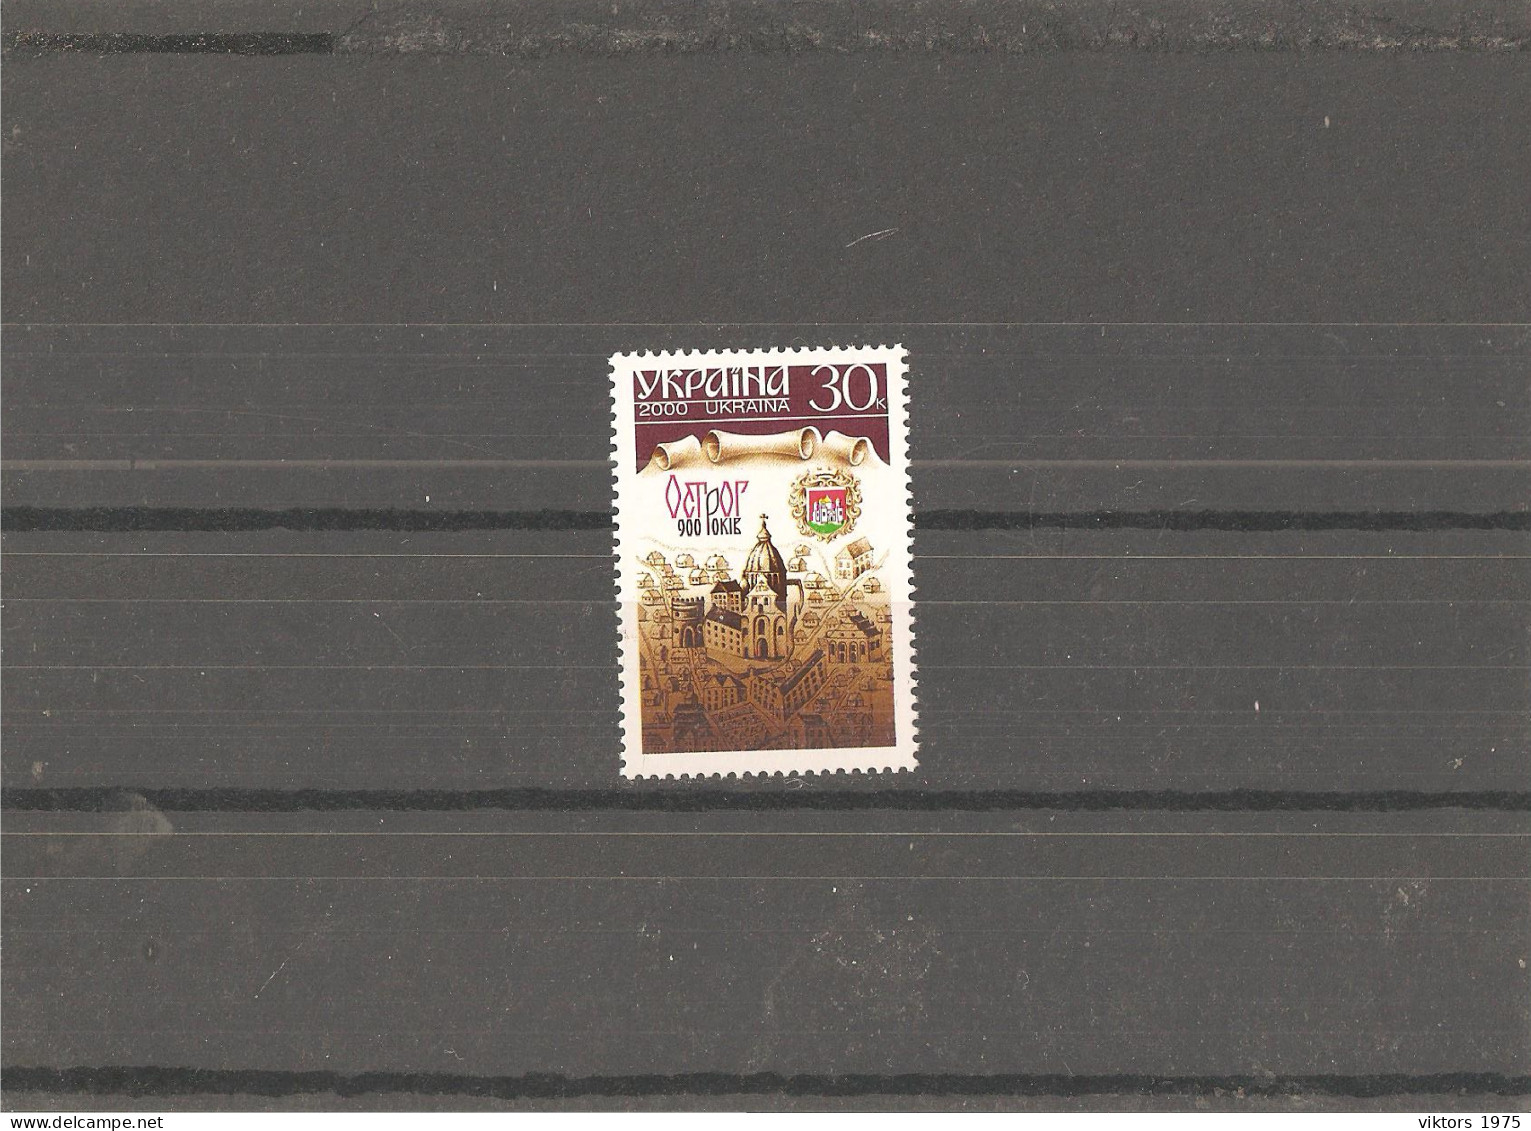 MNH Stamp Nr.382 In MICHEL Catalog - Ukraine